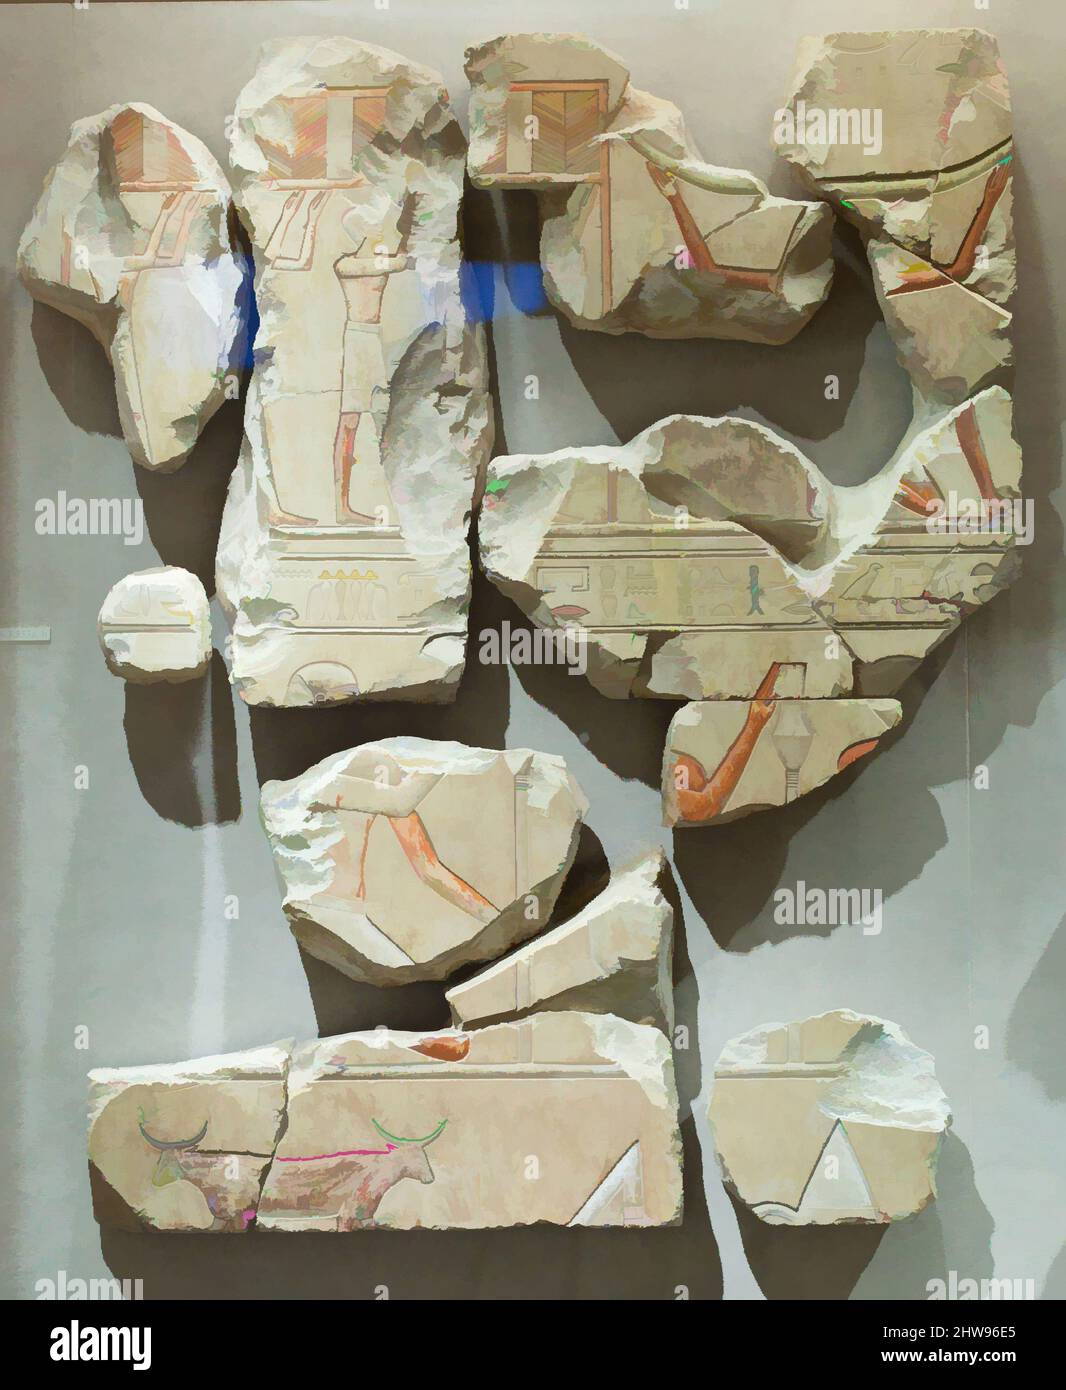 Arte ispirata al Relief raffigurante rituali ed emblemi sacri, Regno di mezzo, Dinastia 11, ca. 2051–2030 a.C., dall'Egitto, dall'Egitto superiore, da Tebe, da Deir el-Bahri, Tomba di Neferu (TT 319,), 1923–25, calcare, vernice, 26,3a: H. 67,5 x W. 102 cm (26 9/16 x 40 3/16 in.), Neferu era molto probabile, opere classiche modernizzate da Artotop con un tuffo di modernità. Forme, colore e valore, impatto visivo accattivante sulle emozioni artistiche attraverso la libertà delle opere d'arte in modo contemporaneo. Un messaggio senza tempo che persegue una nuova direzione selvaggiamente creativa. Artisti che si rivolgono al supporto digitale e creano l'NFT Artotop Foto Stock